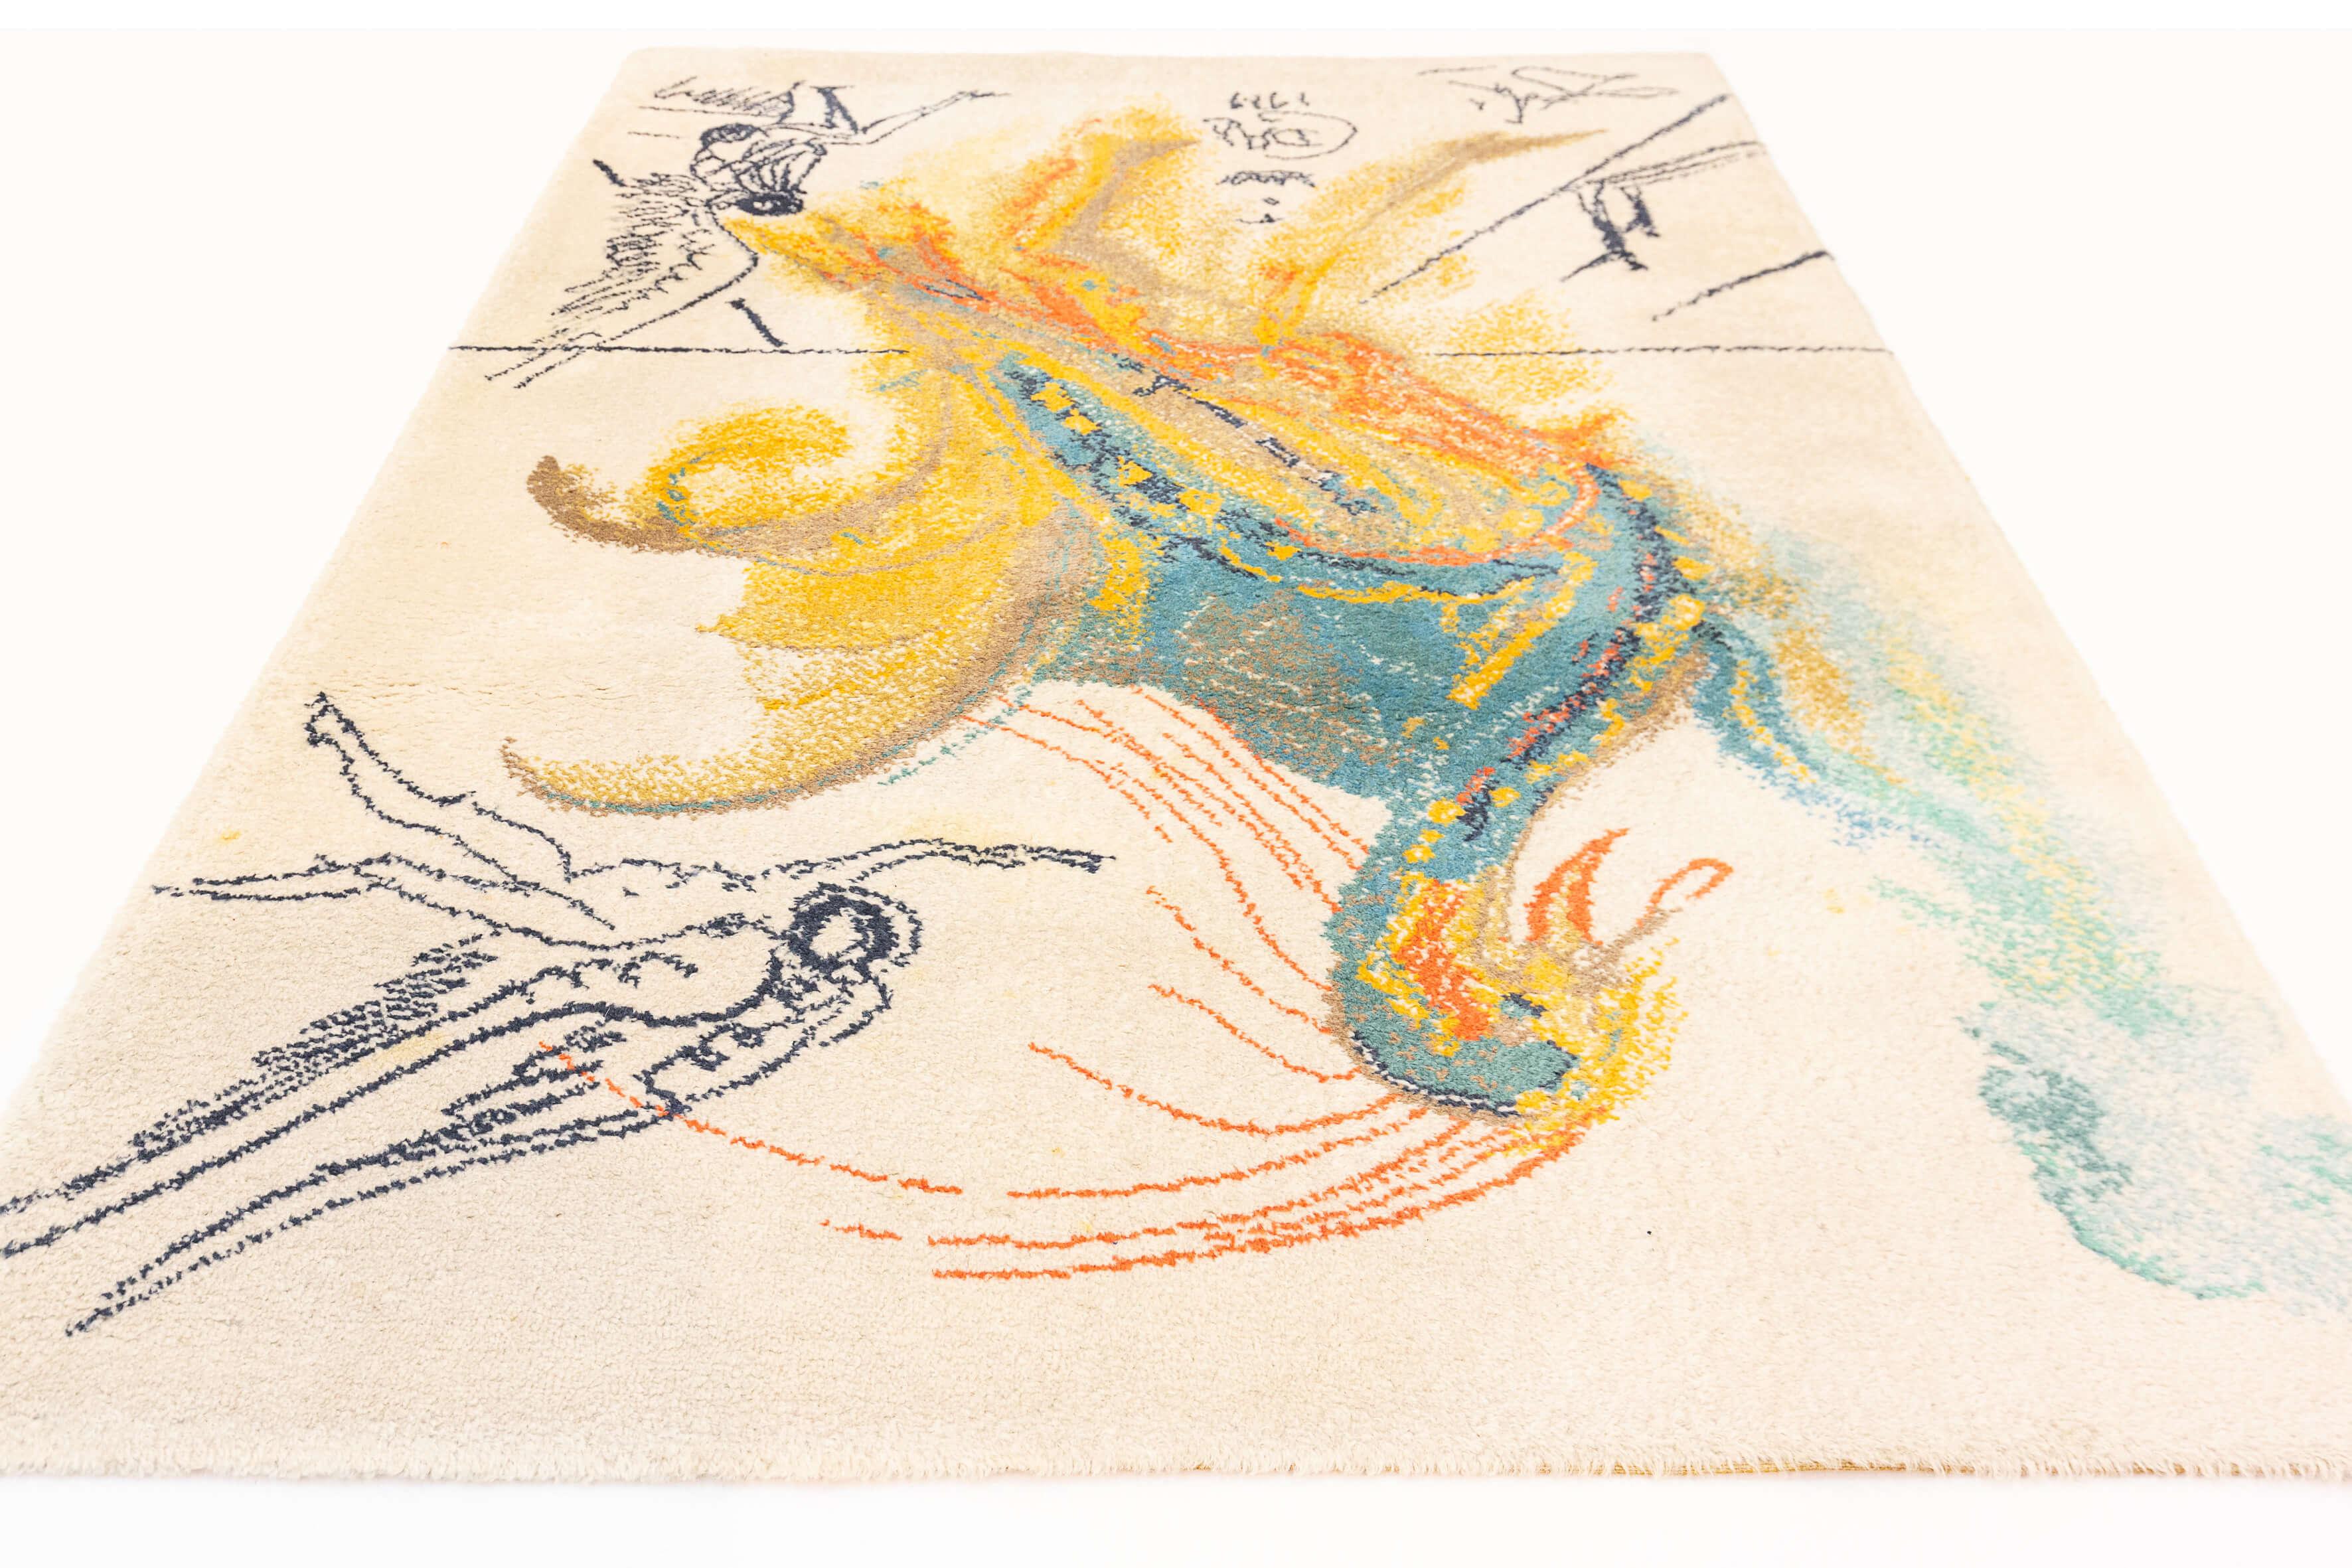 Dieser Teppich aus der Mitte des Jahrhunderts zeigt ein Kunstwerk von Salvador Dalí, dem berühmten spanischen surrealistischen Künstler. Das Werk ist eine Darstellung von Dalís einzigartigem und fantastischem Stil und zeigt ein abstrahiertes,